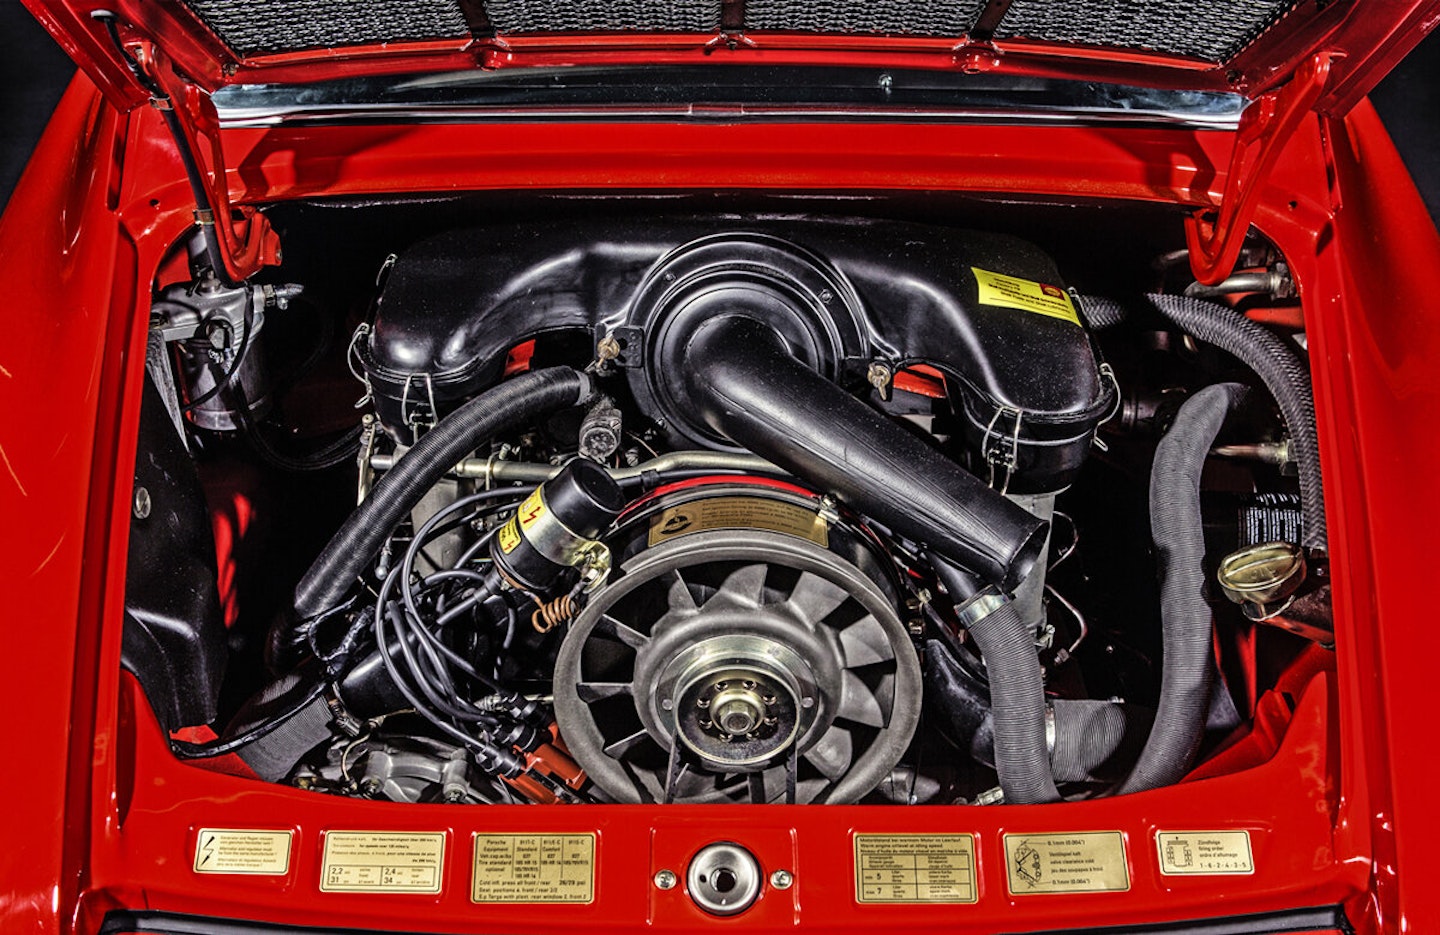 Porsche engine